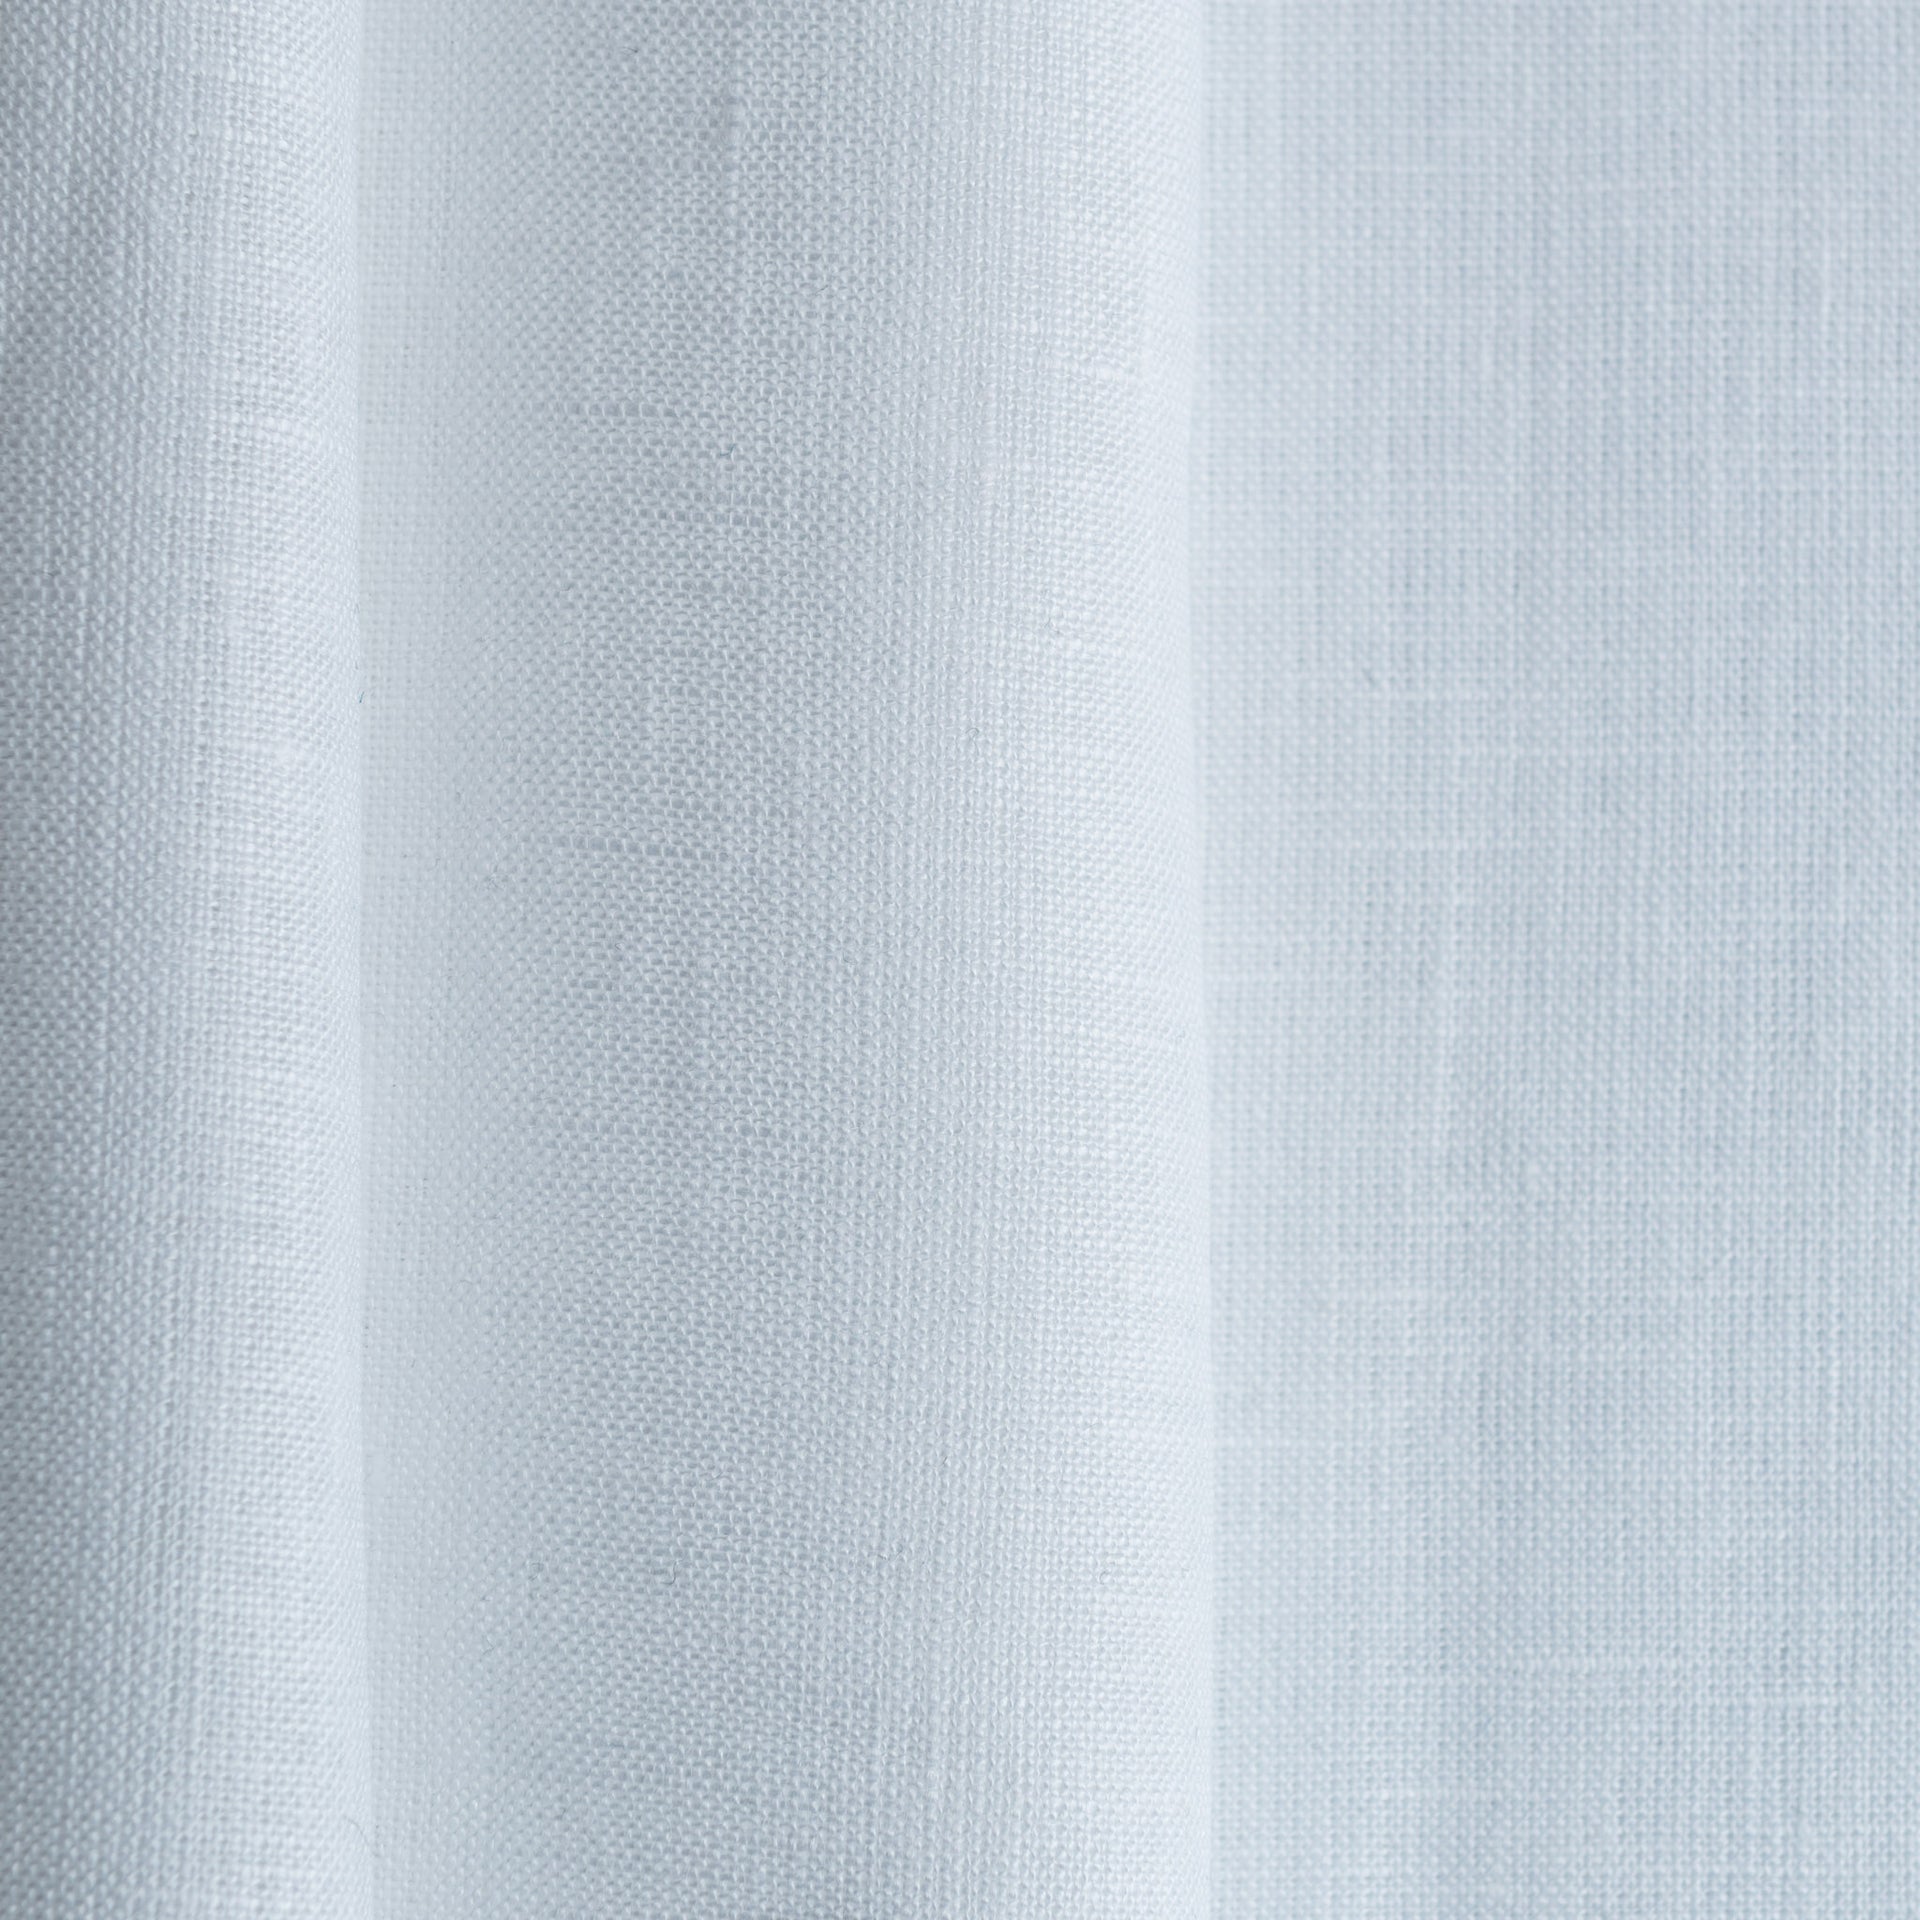 White Linen Rod Pocket Curtain Panel - Custom Width, Custom Length, Color: White